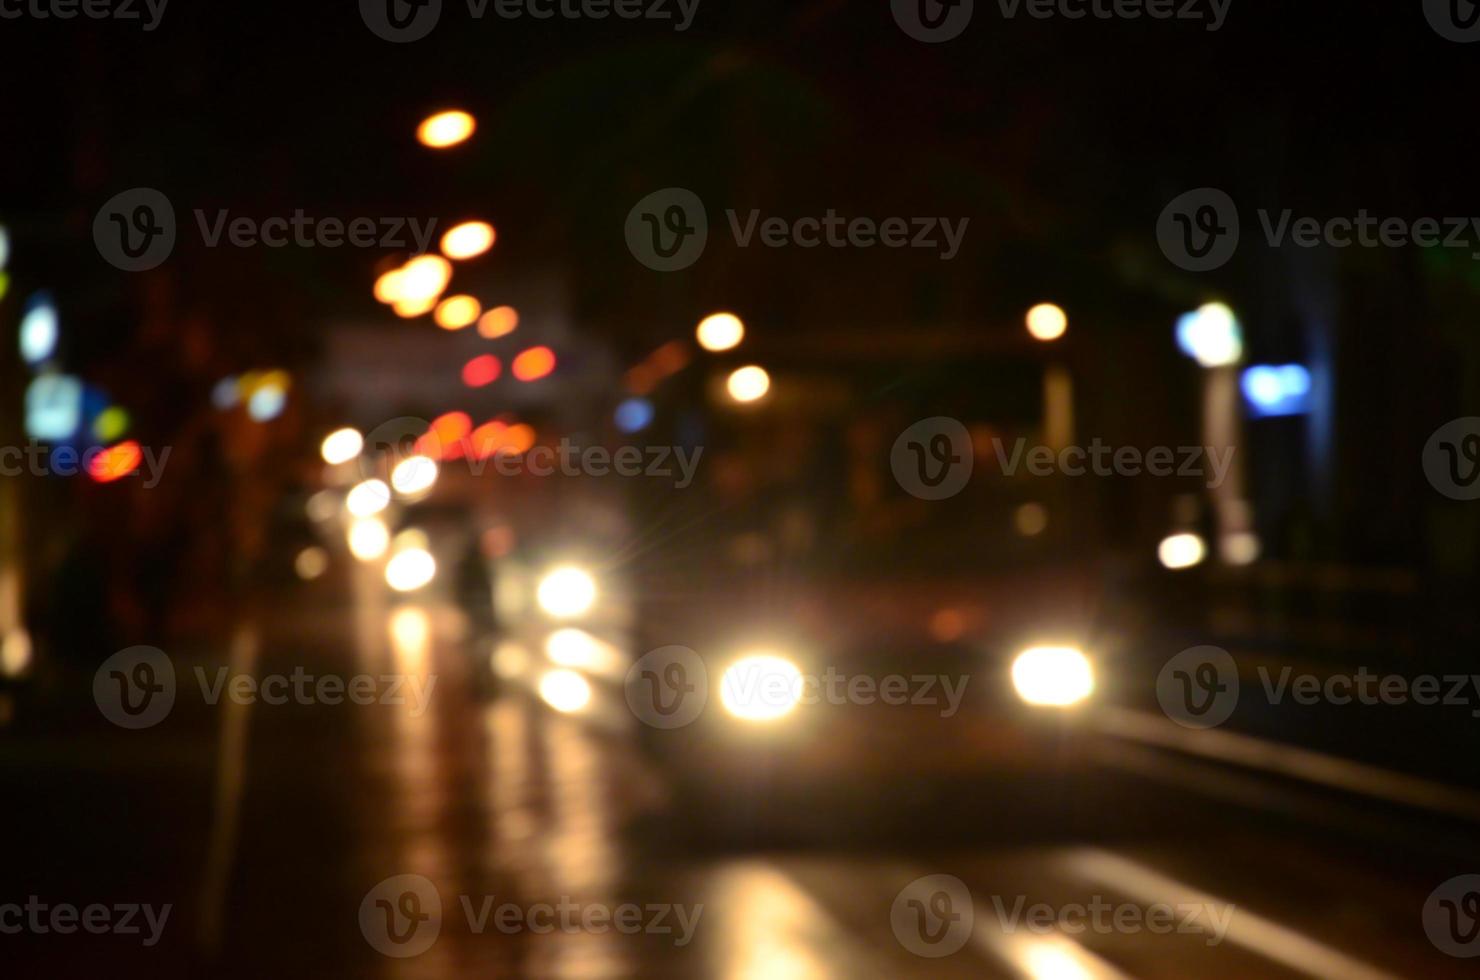 escena nocturna borrosa de tráfico en la carretera. imagen desenfocada de coches que viajan con faros luminosos. arte bokeh foto